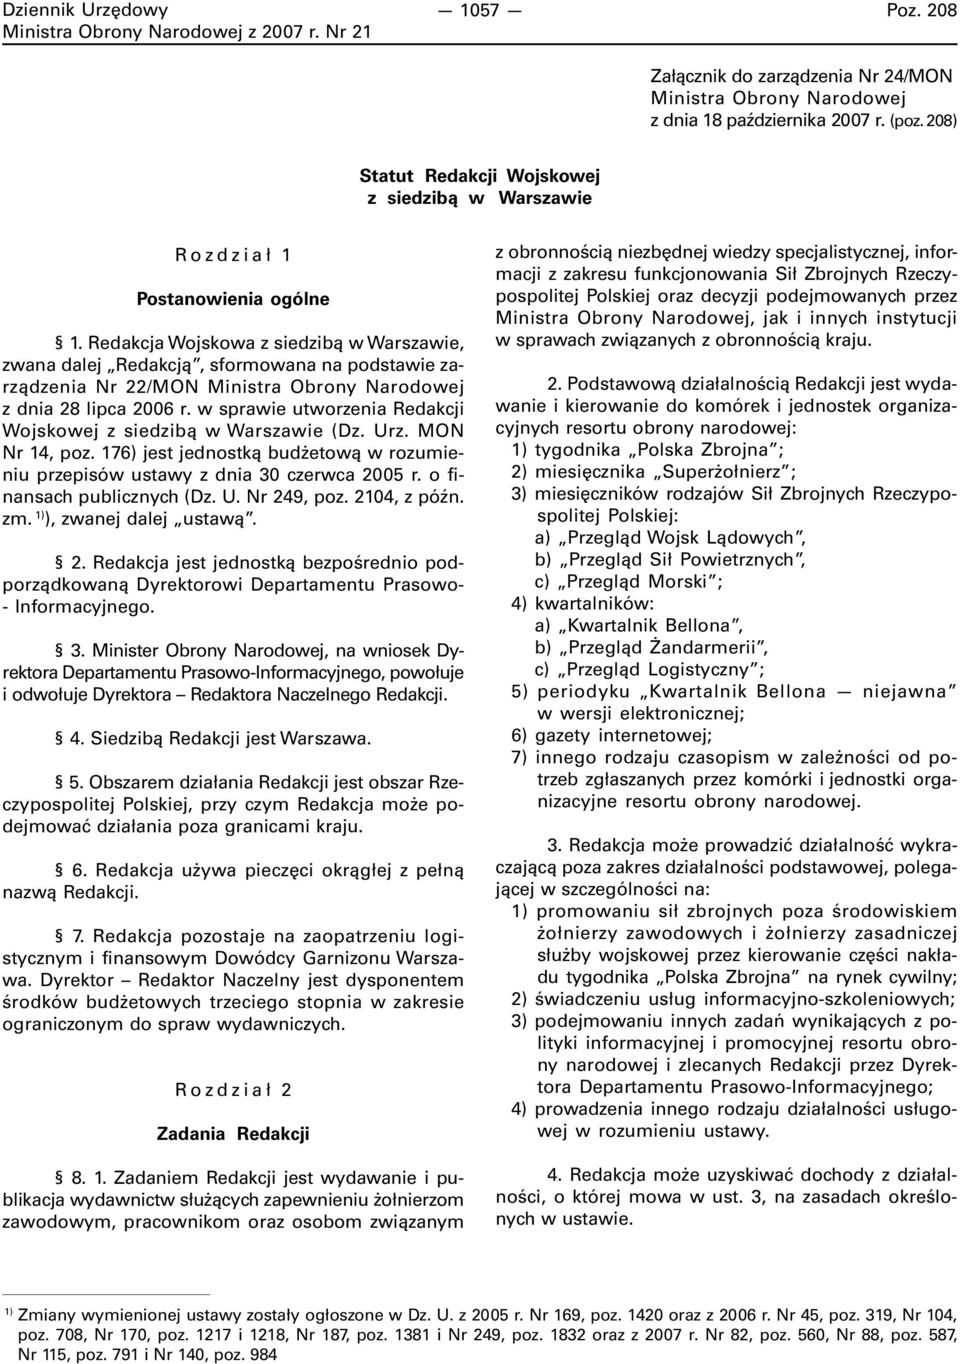 w sprawie utworzenia Redakcji Wojskowej z siedzibą w Warszawie (Dz. Urz. MON Nr 14, poz. 176) jest jednostką budżetową w rozumieniu przepisów ustawy z dnia 30 czerwca 2005 r.